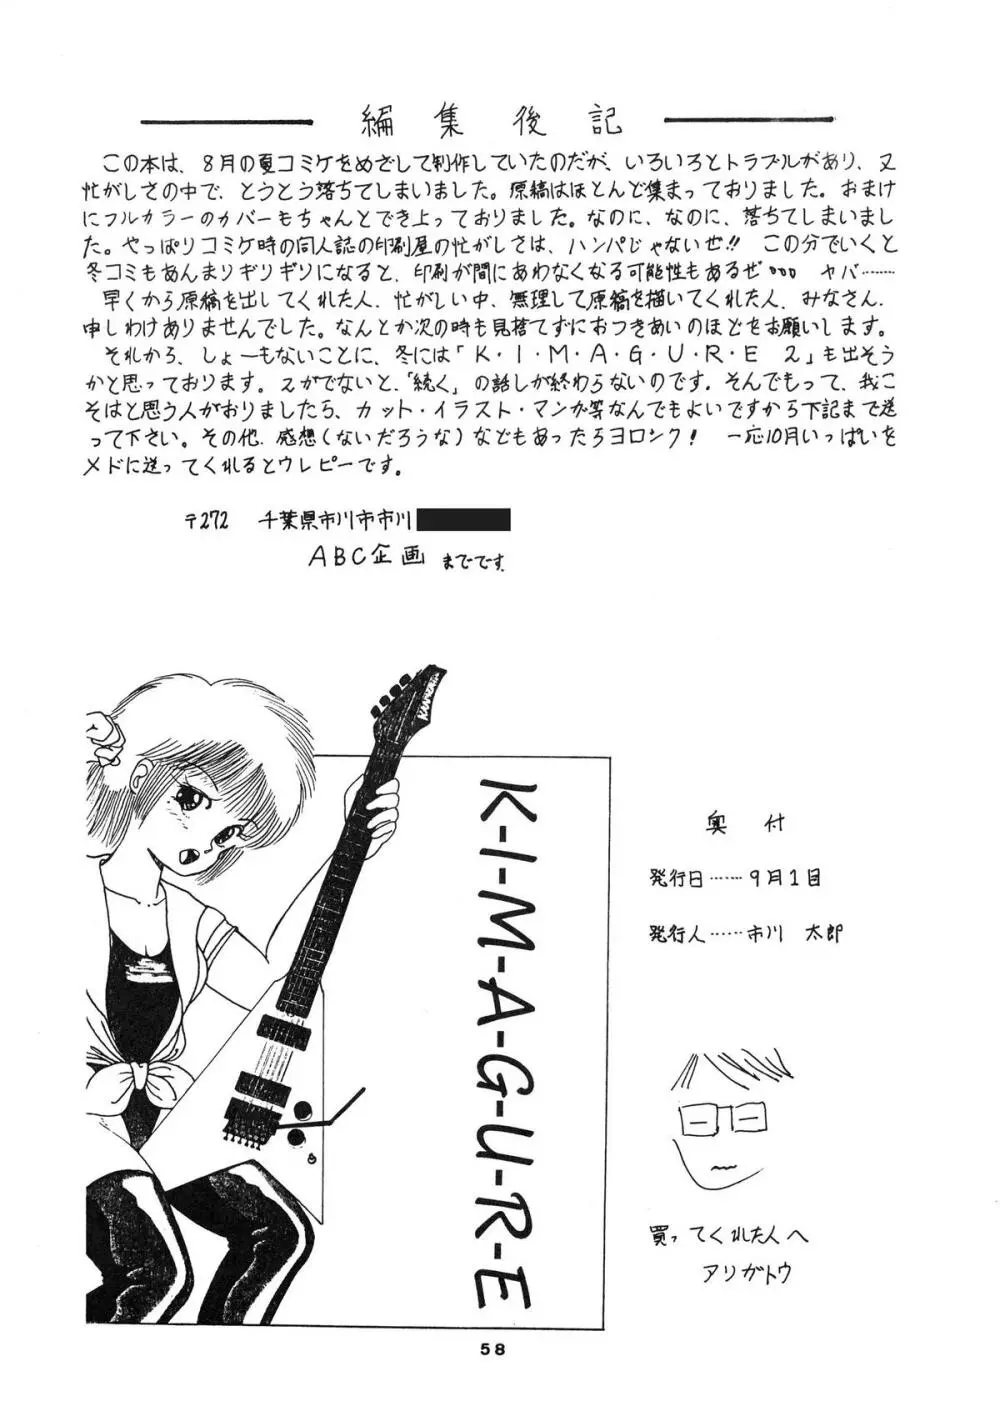 [ABC企画] K-I-M-A-G-U-R-E (きまぐれオレンジ☆ロード) 60ページ